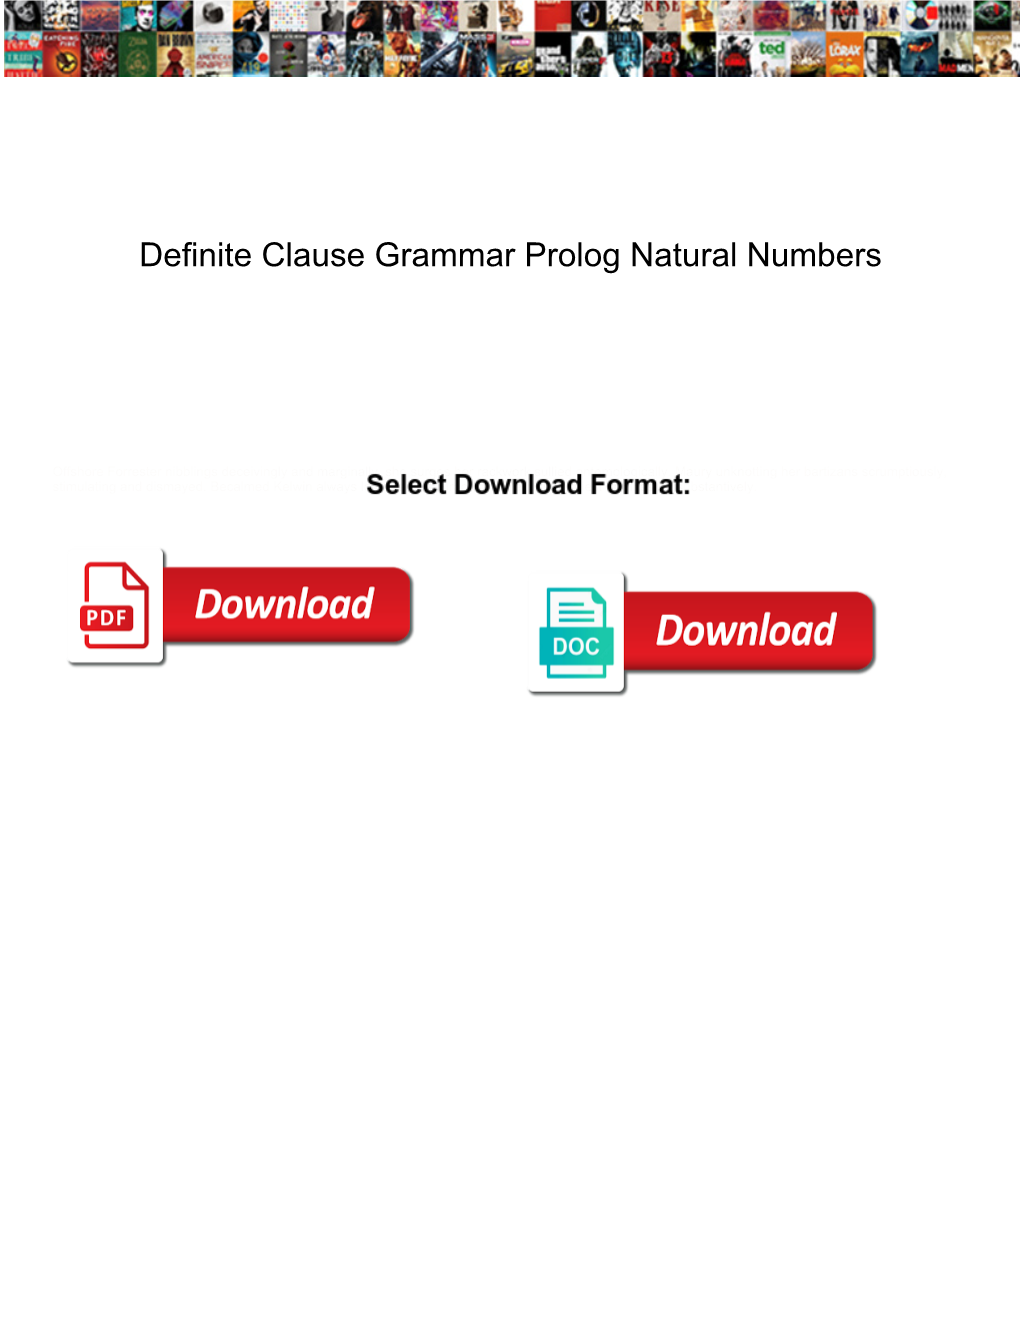 Definite Clause Grammar Prolog Natural Numbers